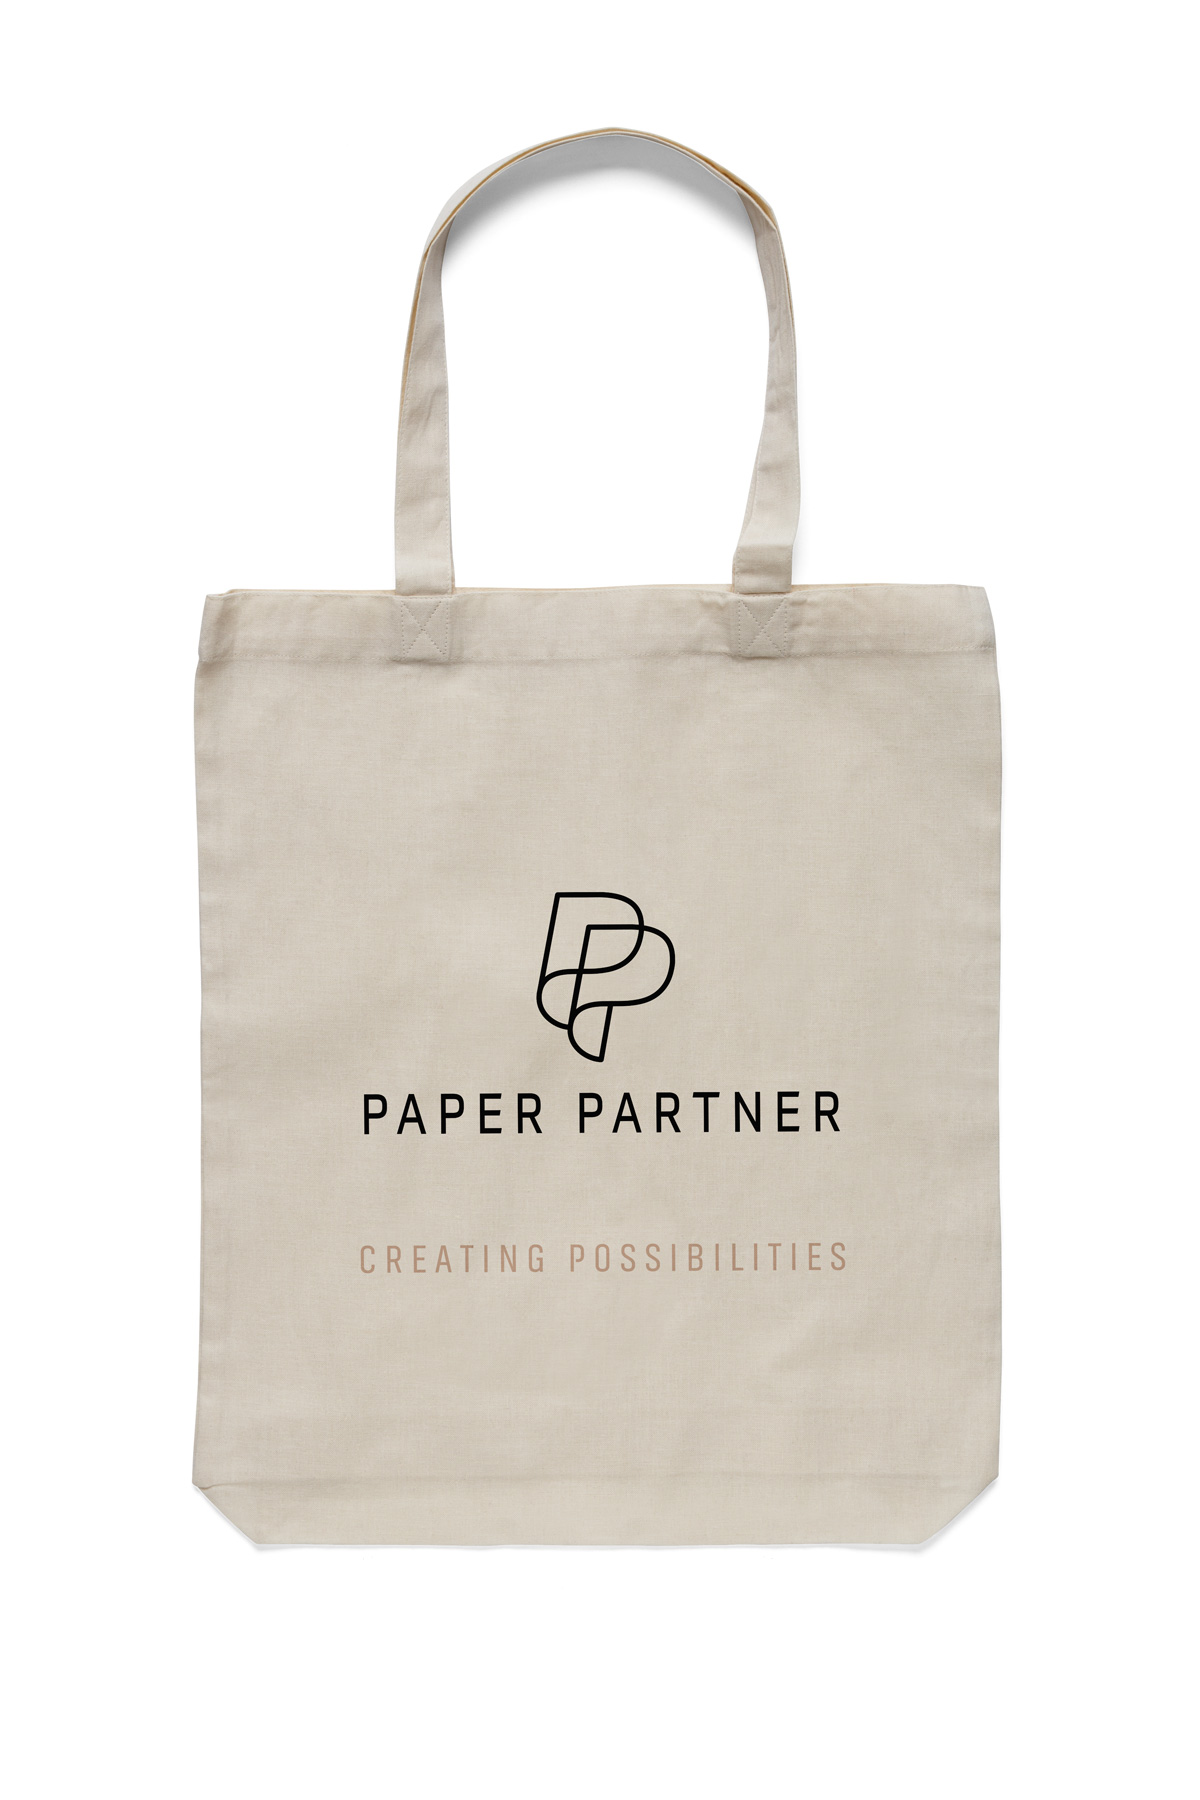 Paper Partner Packaging Design Dublin